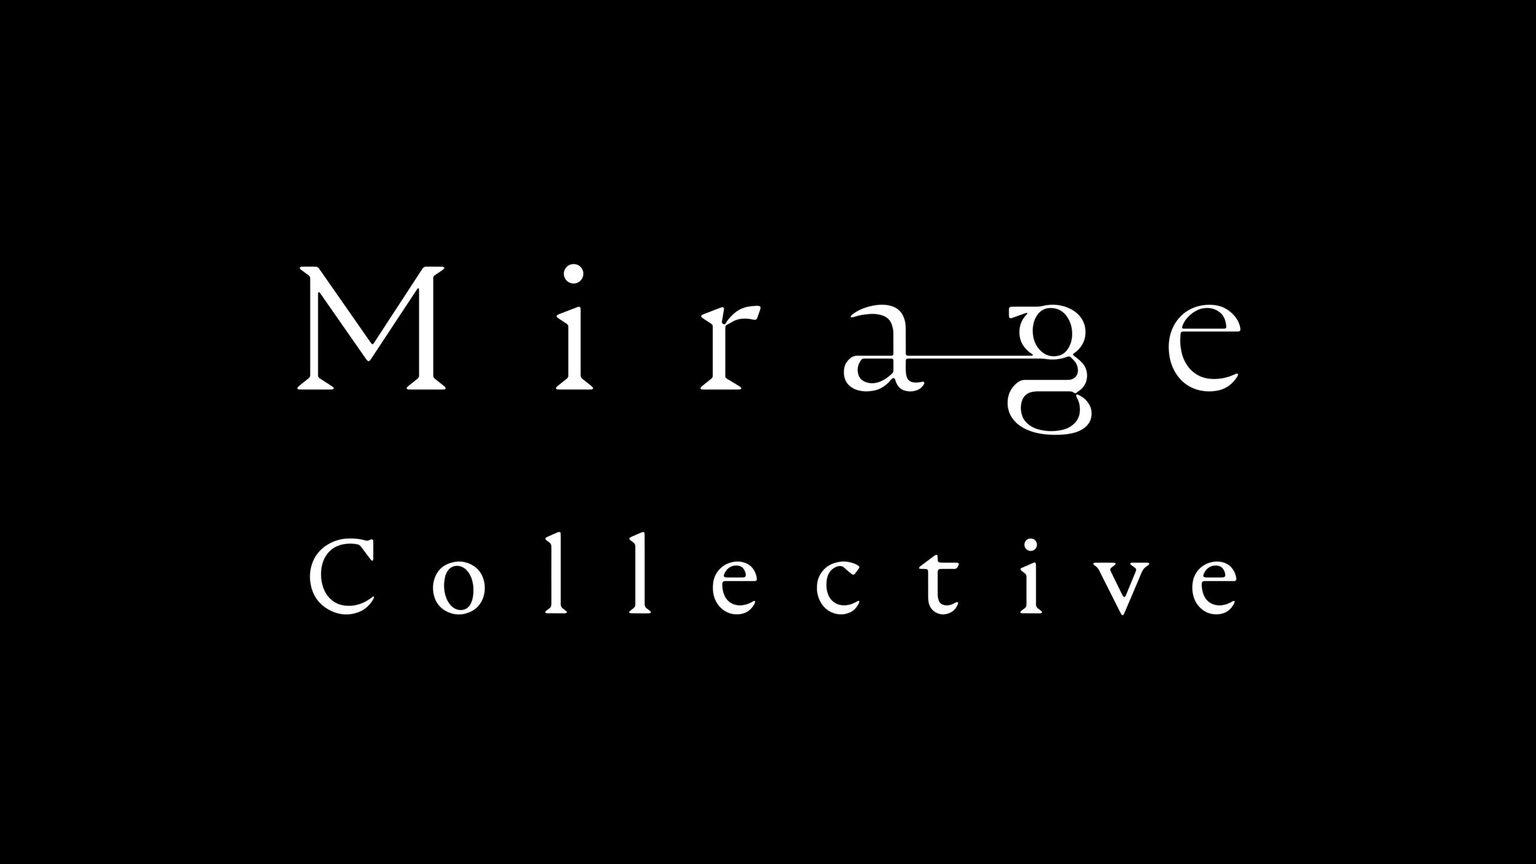 『エルピス』の主題歌は、Mirage Collectiveの「Mirage」